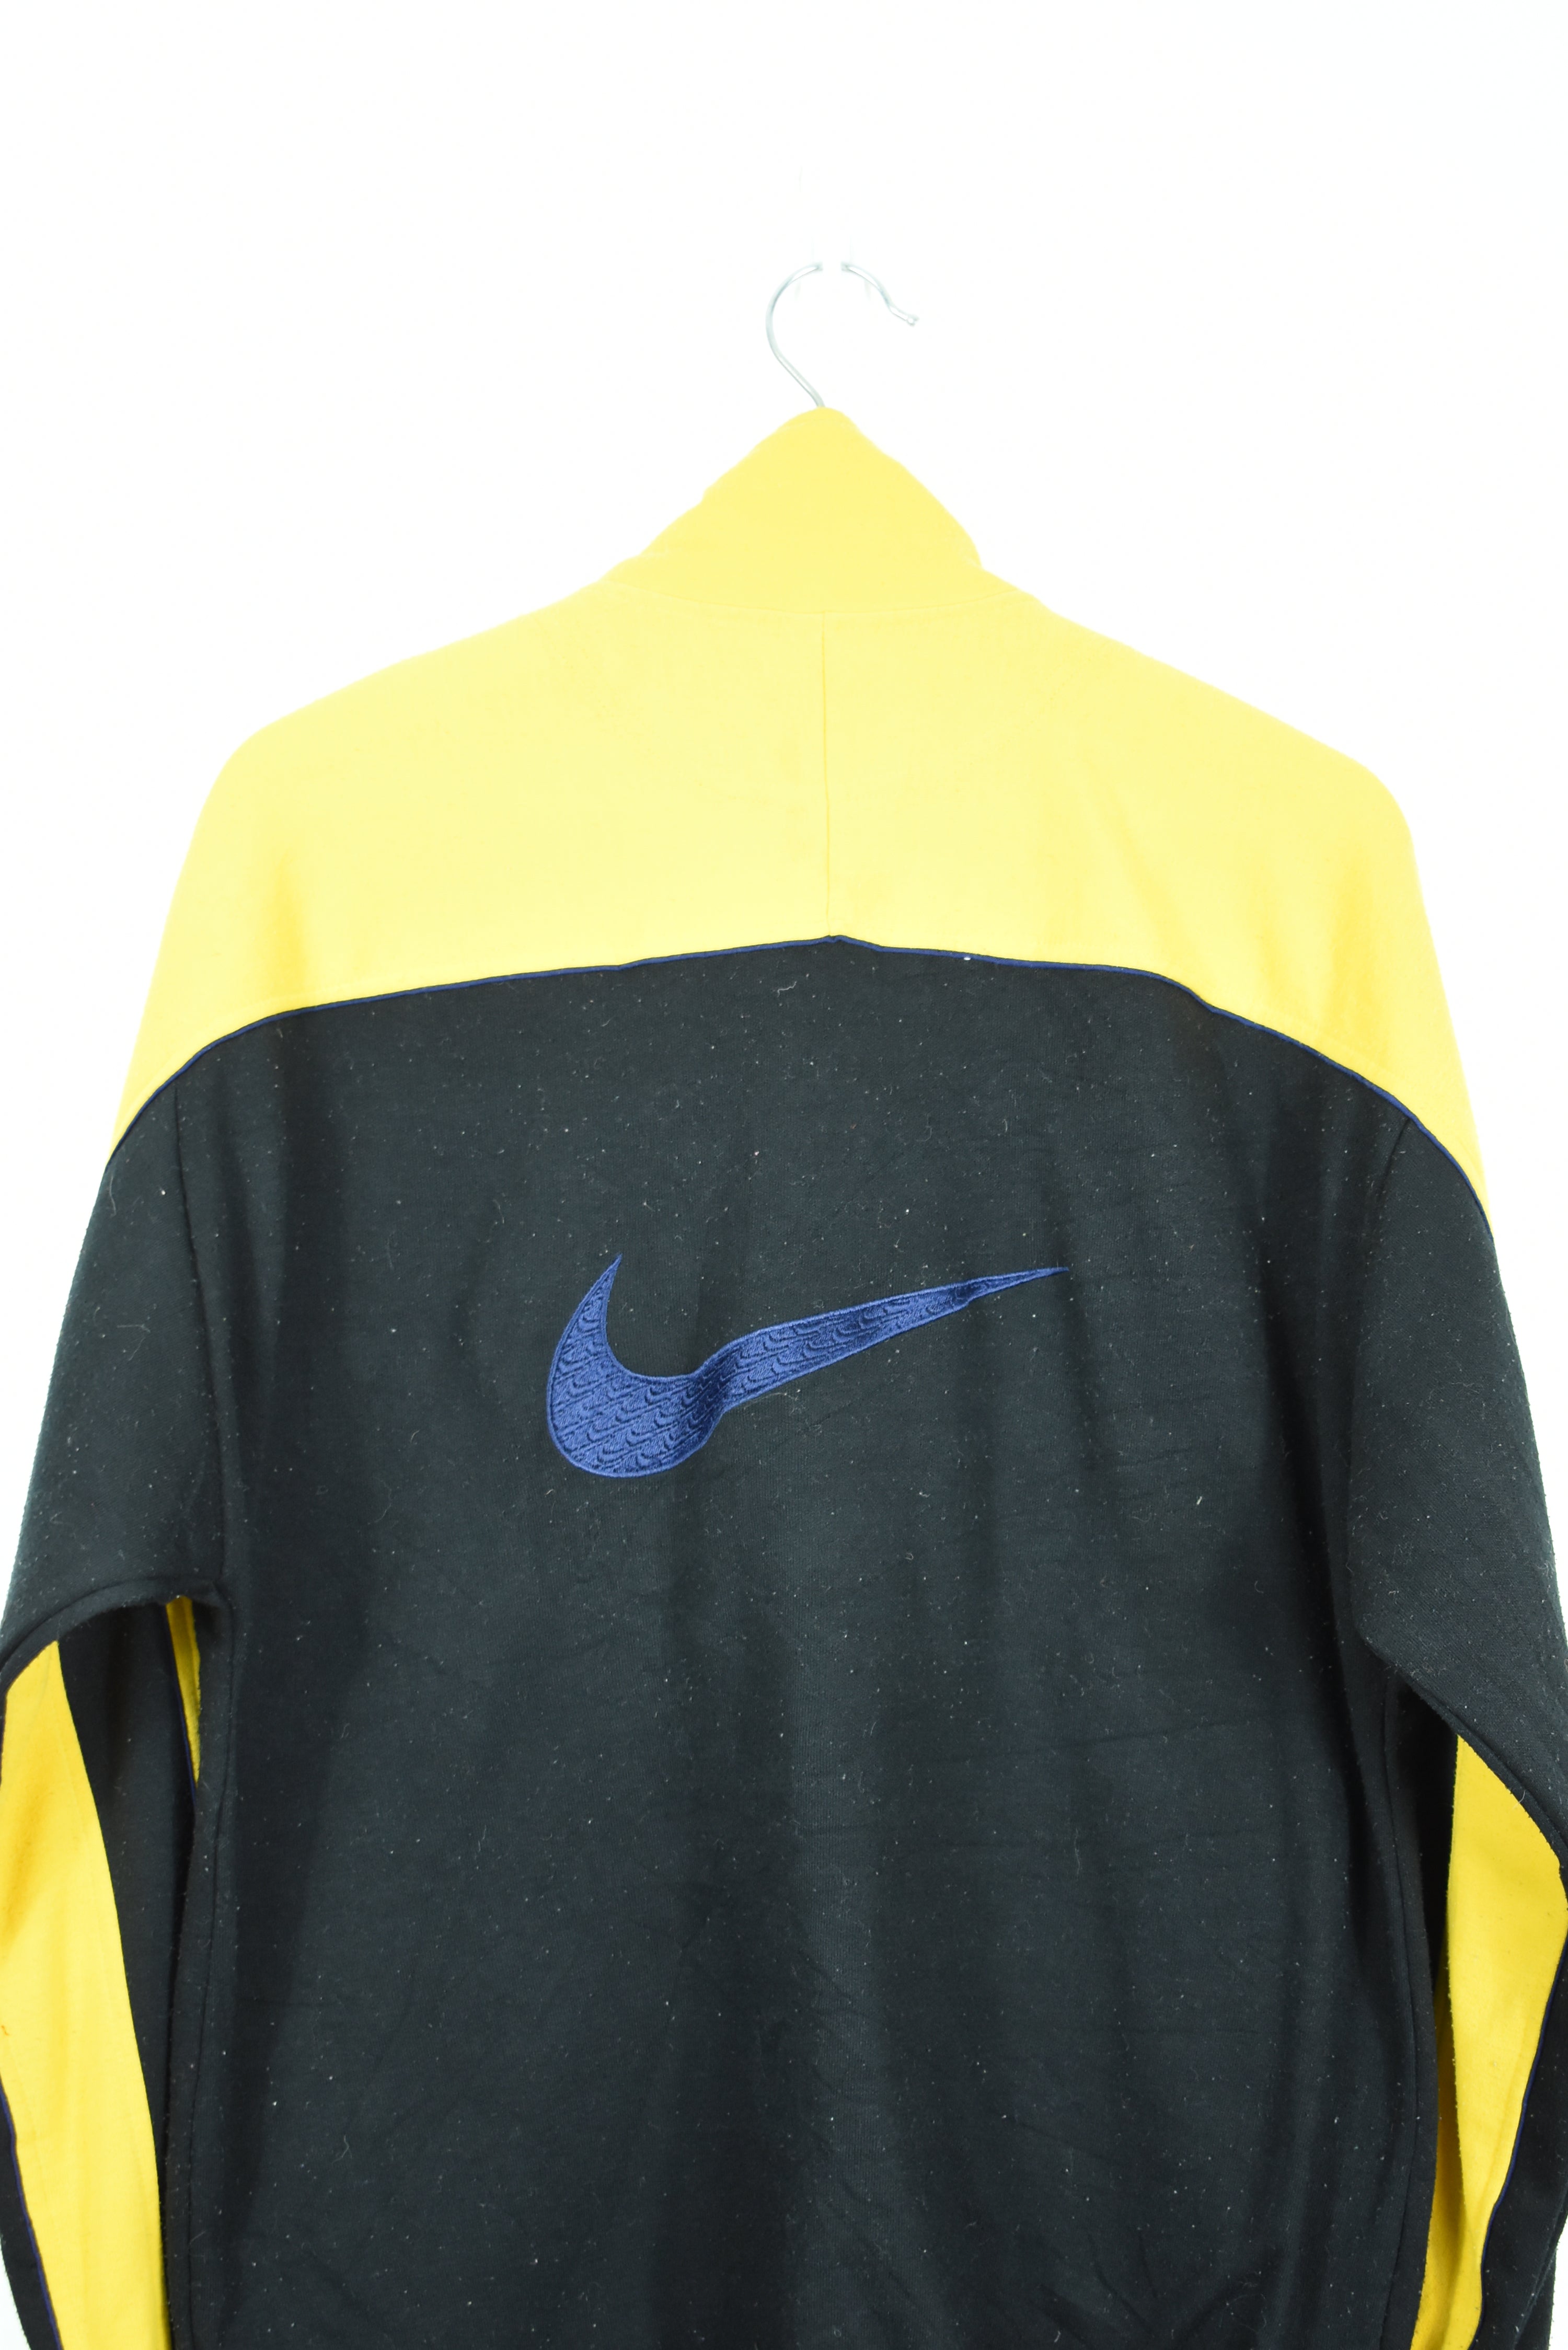 Vintage Nike Embroidery 1/4 Zip Sweatshirt Medium